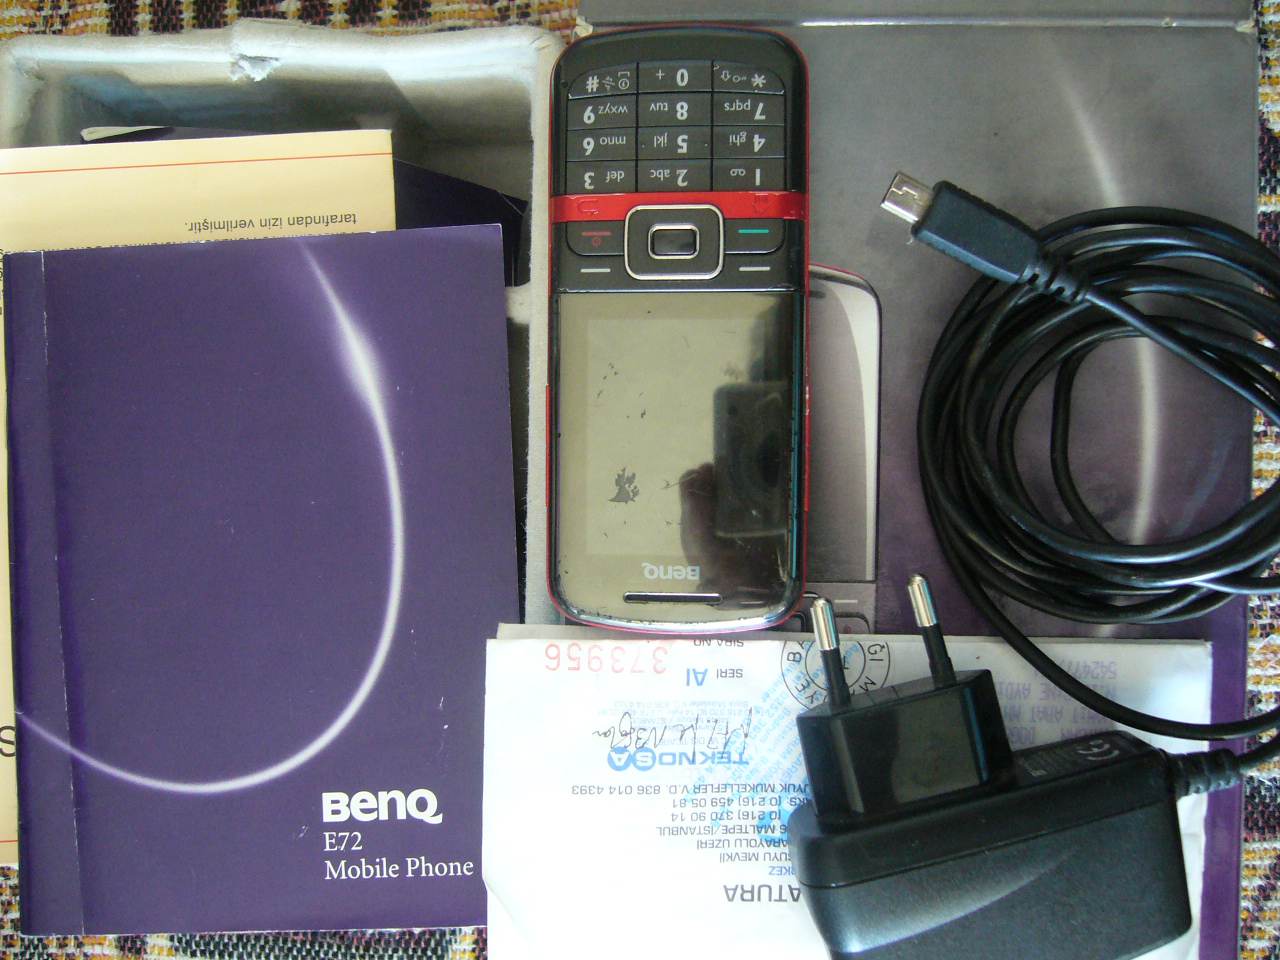  Benq E72 wm6.5-wifi-2mp  kamera-60 tl....